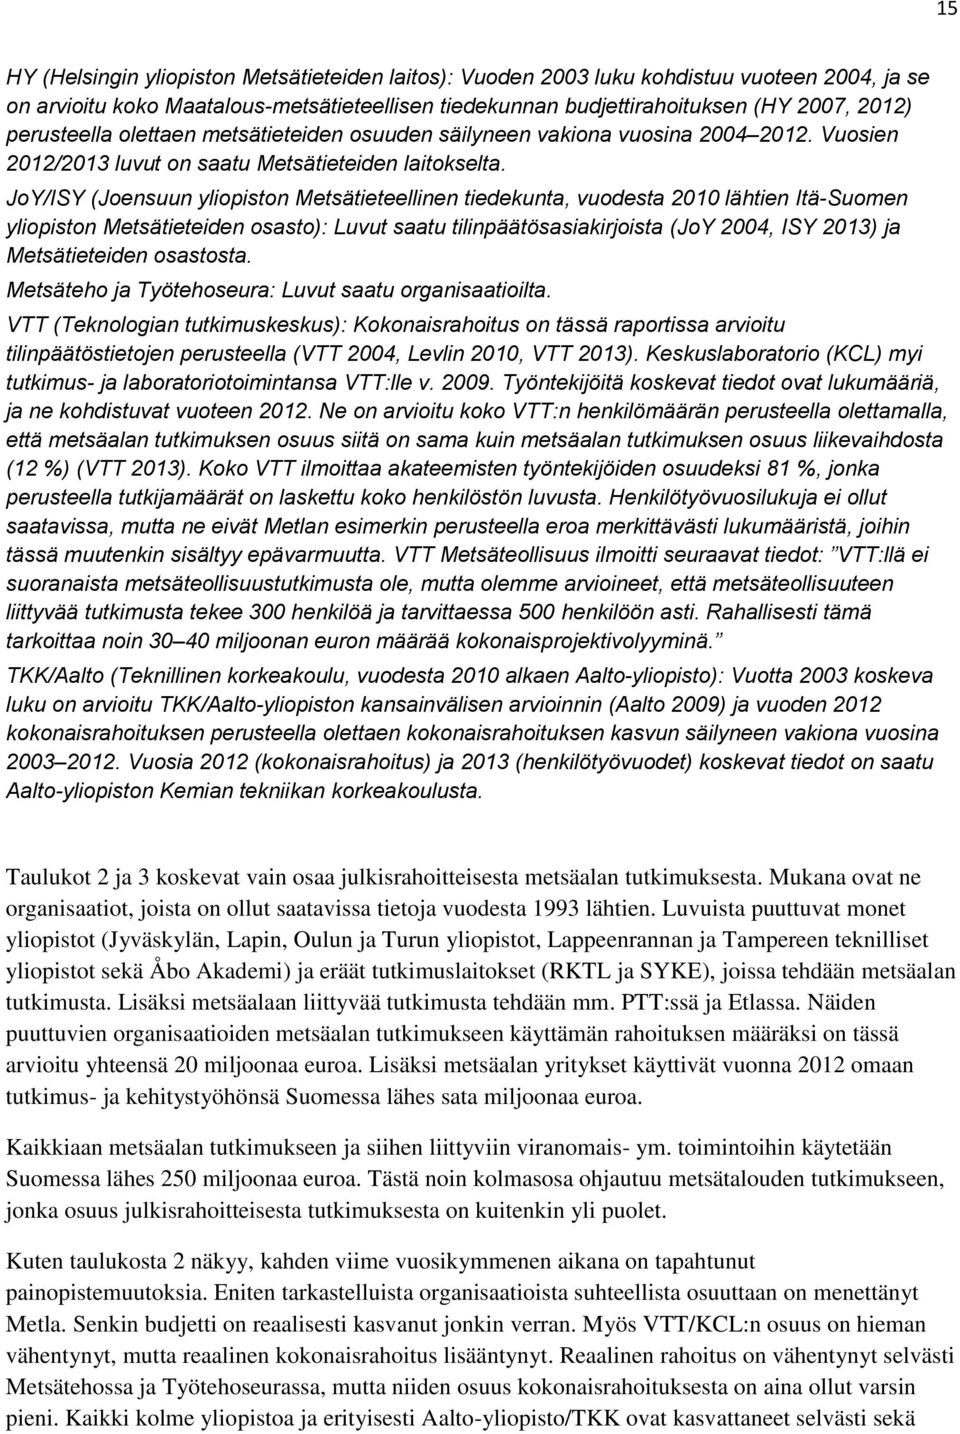 JoY/ISY (Joensuun yliopiston Metsätieteellinen tiedekunta, vuodesta 2010 lähtien Itä-Suomen yliopiston Metsätieteiden osasto): Luvut saatu tilinpäätösasiakirjoista (JoY 2004, ISY 2013) ja